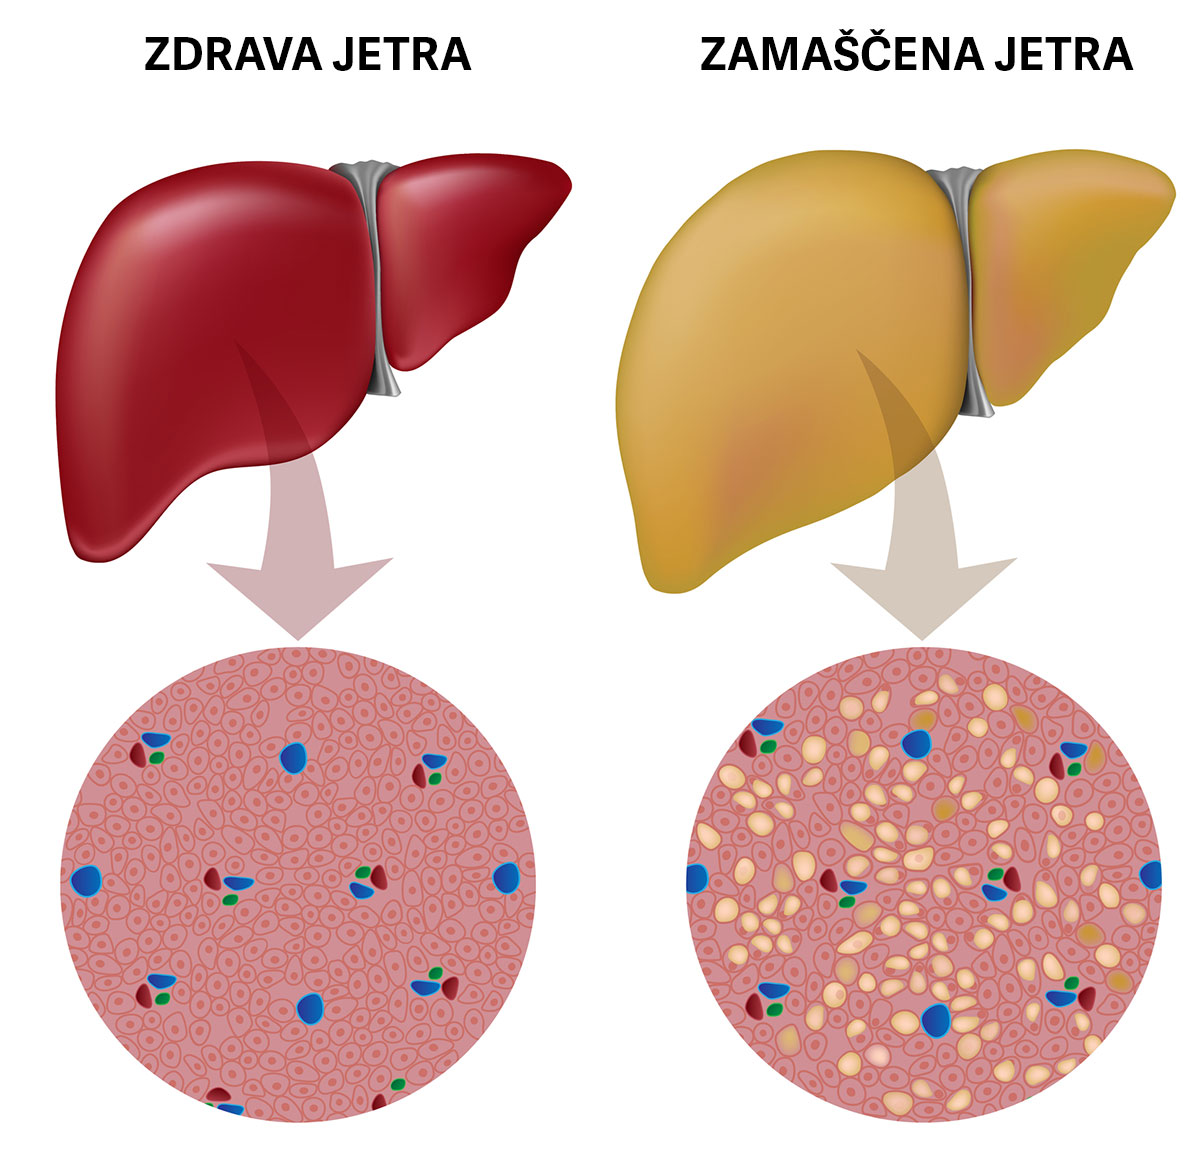 Ciroza in zamaščenost jeter